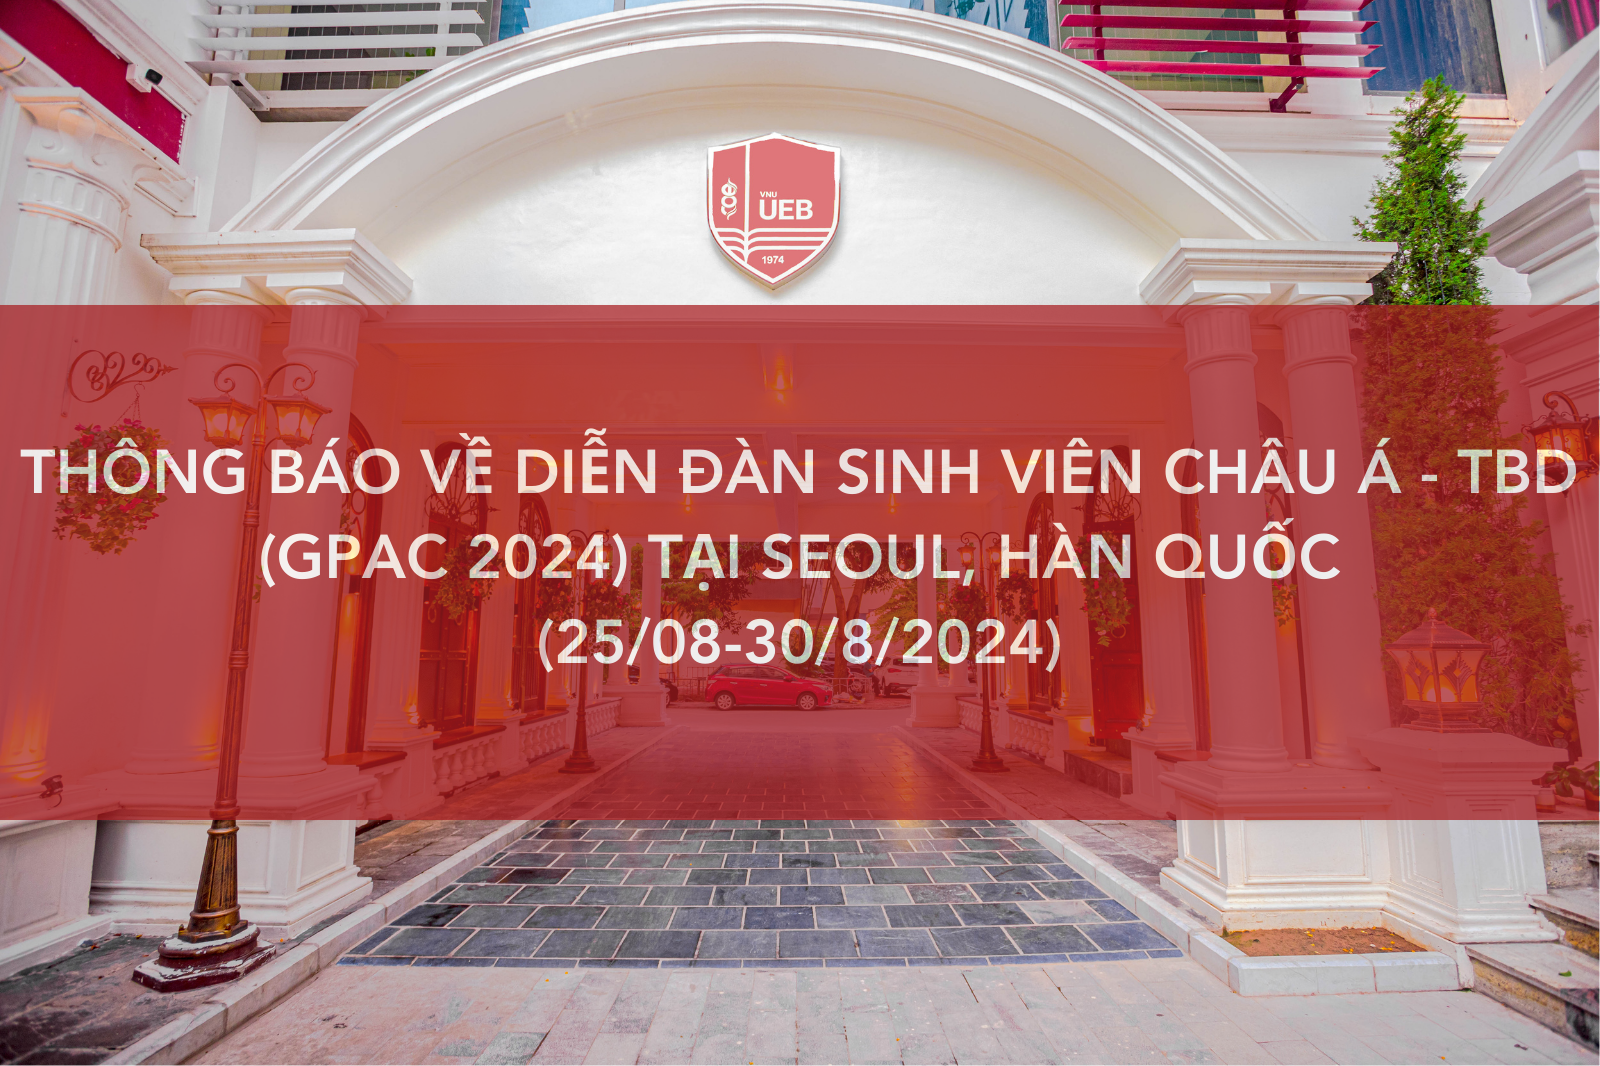 Thông báo đăng ký tham dự Diễn đàn sinh viên Châu Á - Thái Bình Dương (GPAC 2024) tại Seoul, Hàn Quốc